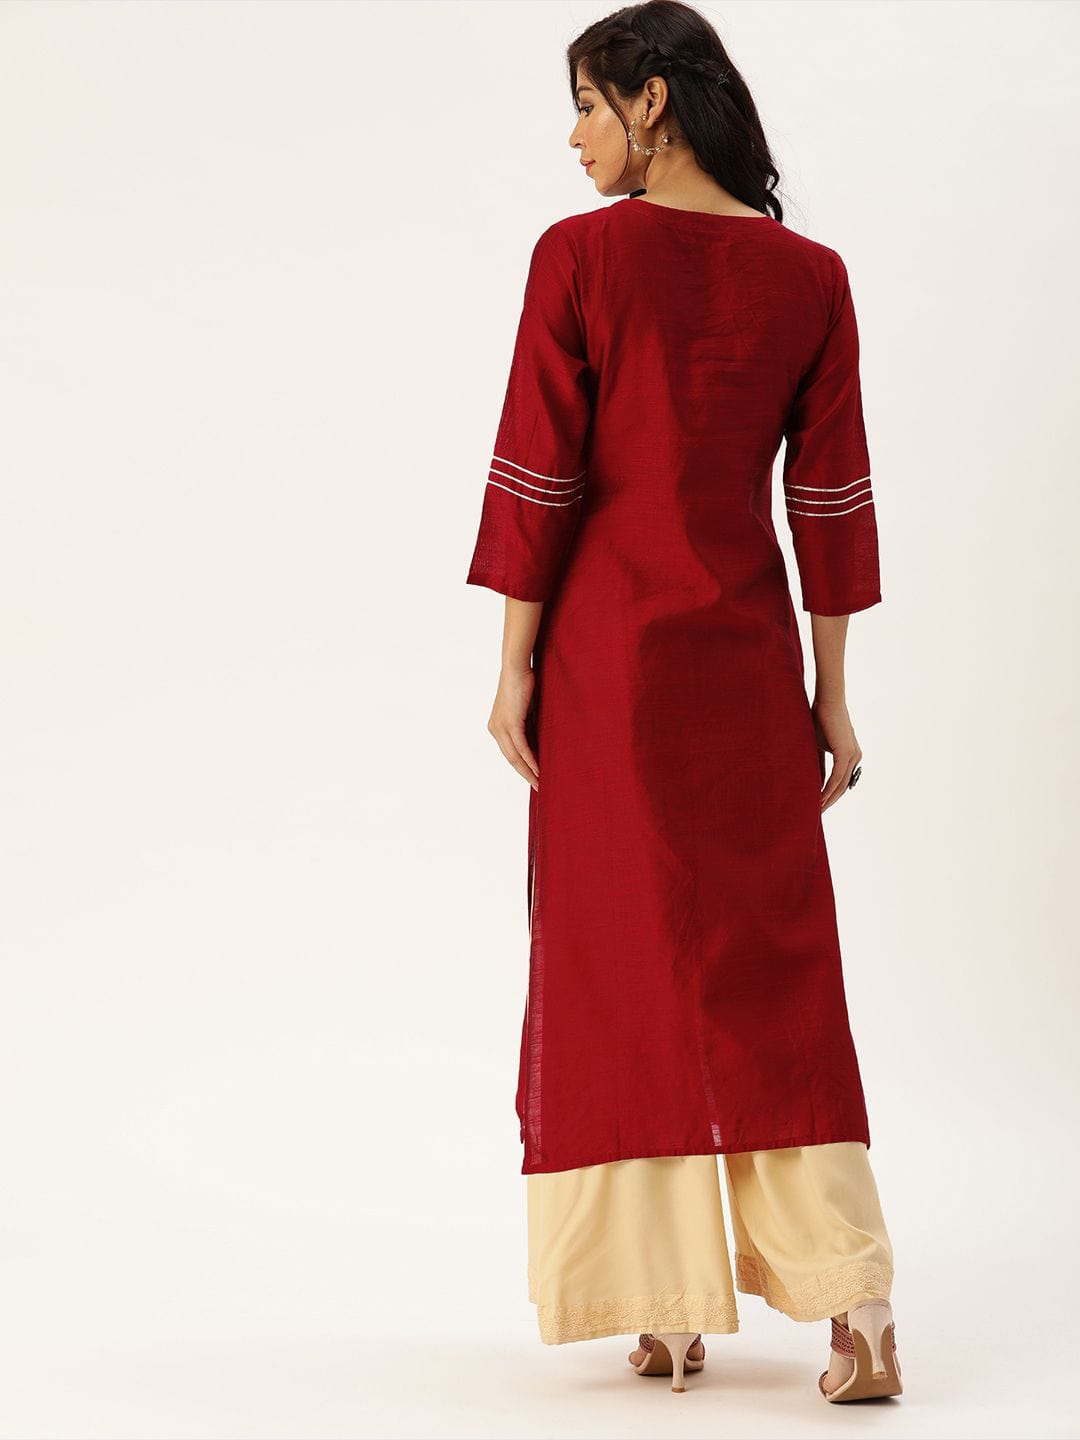 Women's Red & Silver-Toned Embroidered Straight Kurta - Varanga